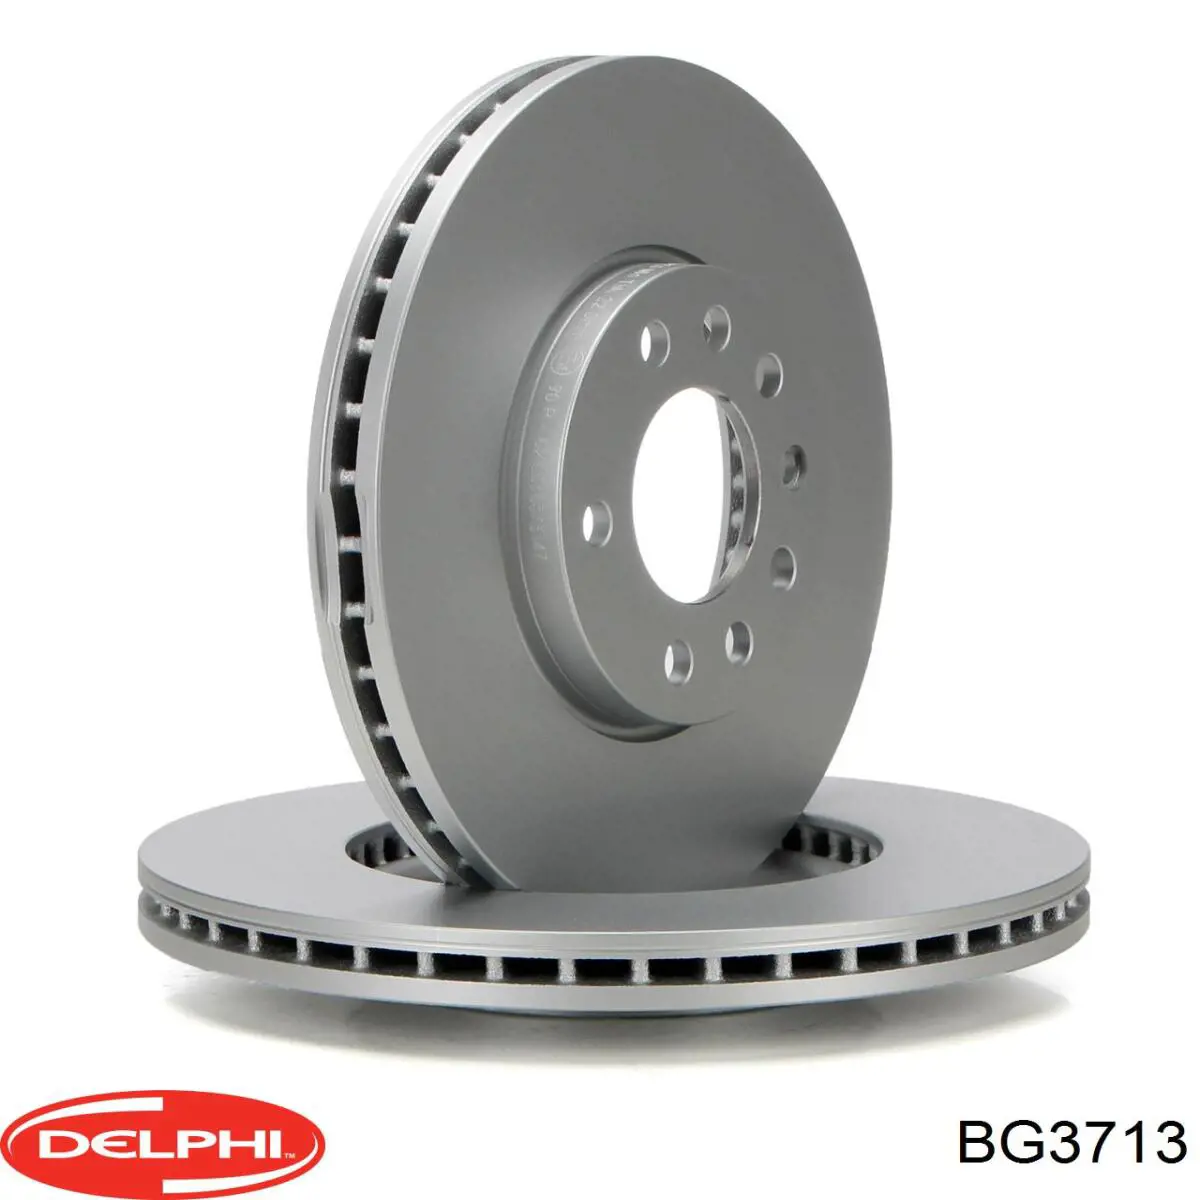 BG3713 Delphi disco do freio dianteiro